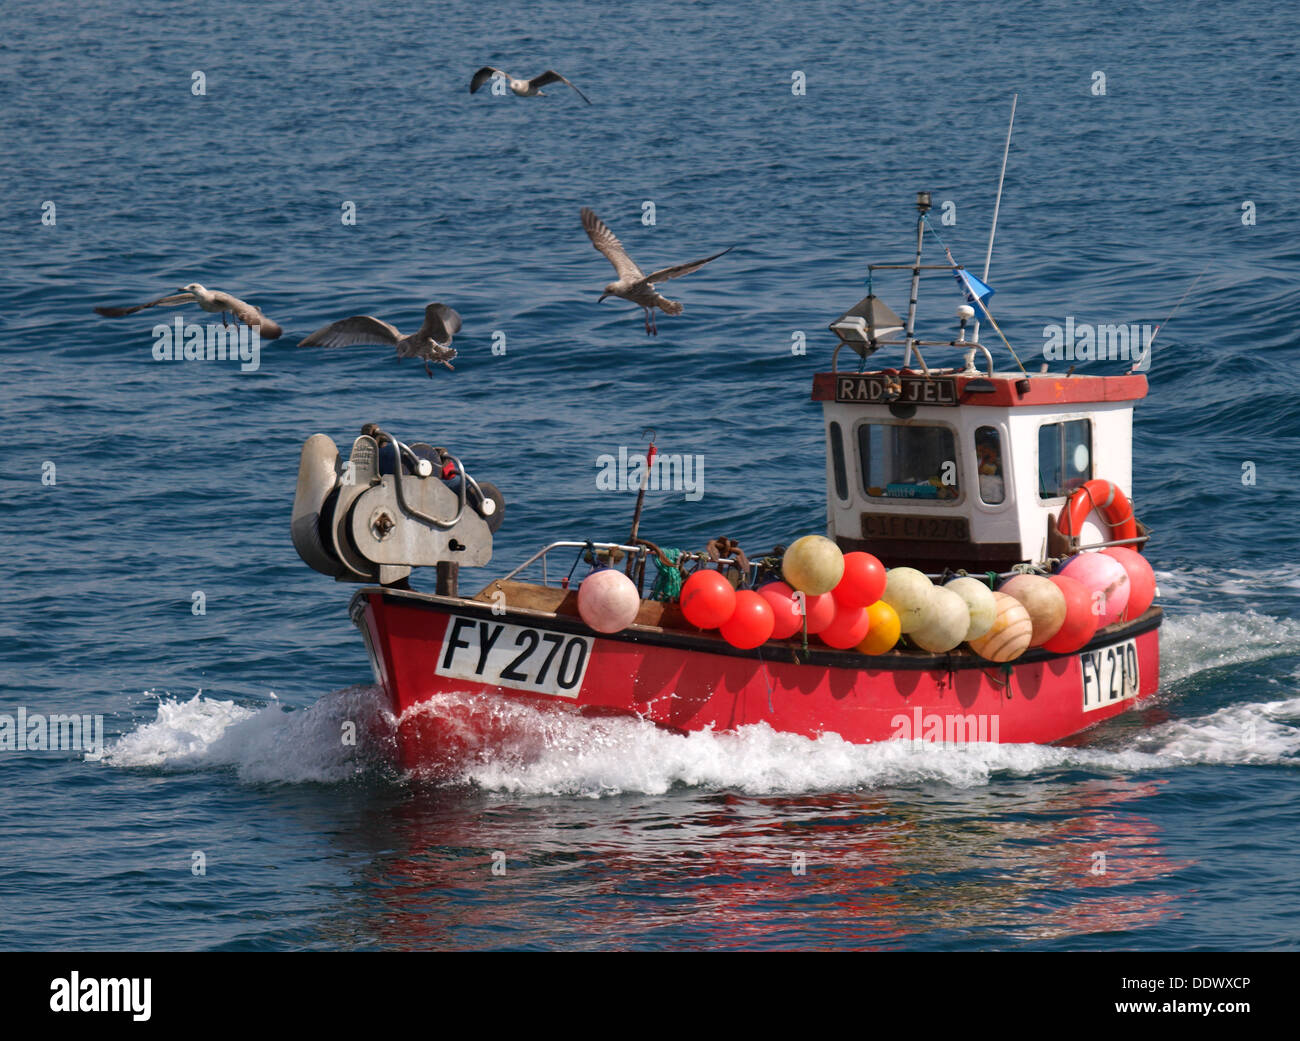 Pequeños arrastreros de pesca comercial que regresan a casa con gaviotas volando alrededor, Mevagissey, Cornwall, UK 2013 Foto de stock